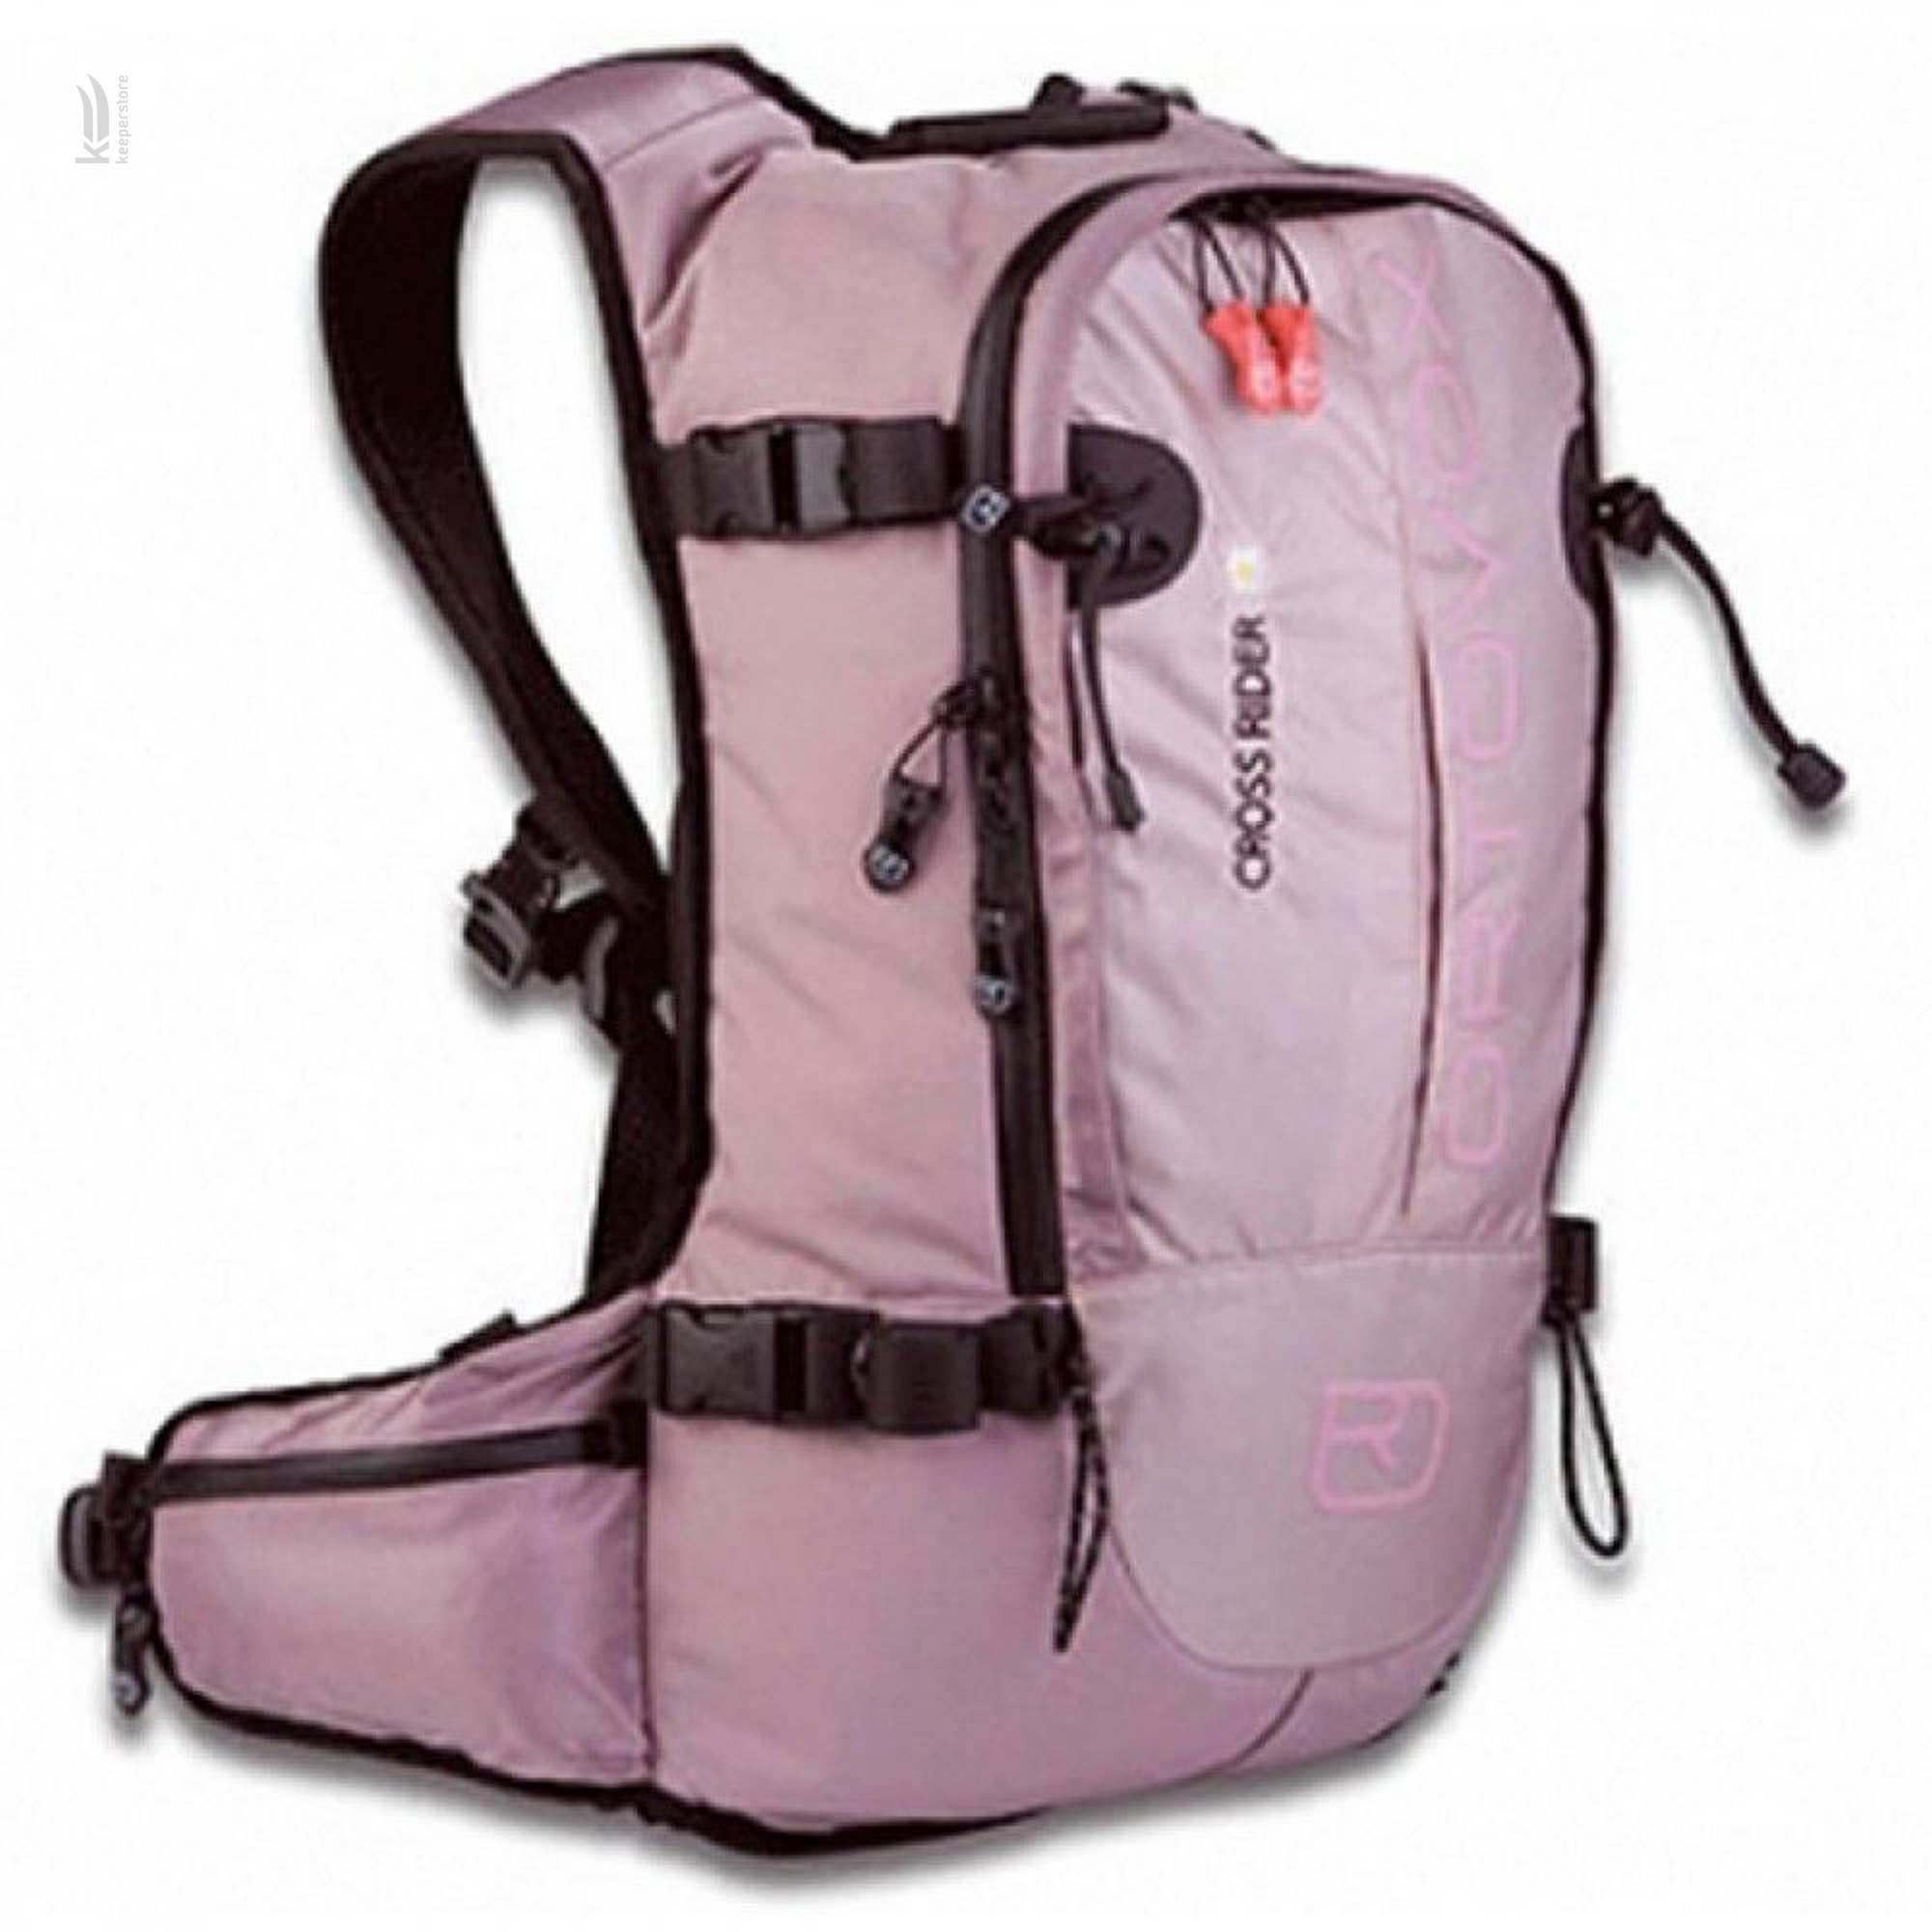 Отзывы горнолыжный рюкзак с защитой спины Ortovox Cross Rider W Lilac Aragon в Украине